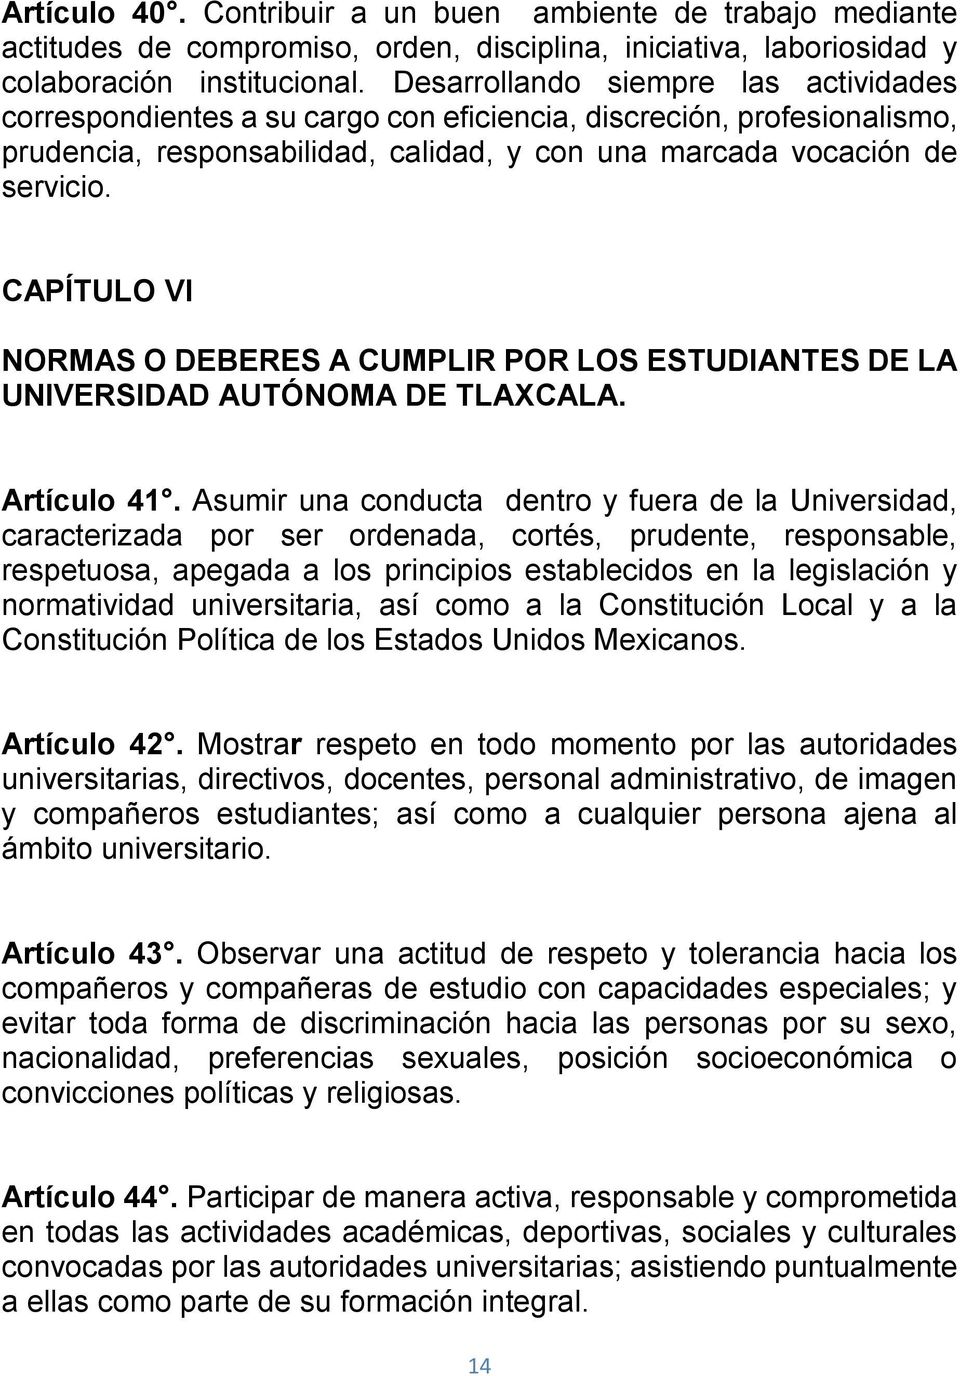 CAPÍTULO VI NORMAS O DEBERES A CUMPLIR POR LOS ESTUDIANTES DE LA UNIVERSIDAD AUTÓNOMA DE TLAXCALA. Artículo 41.